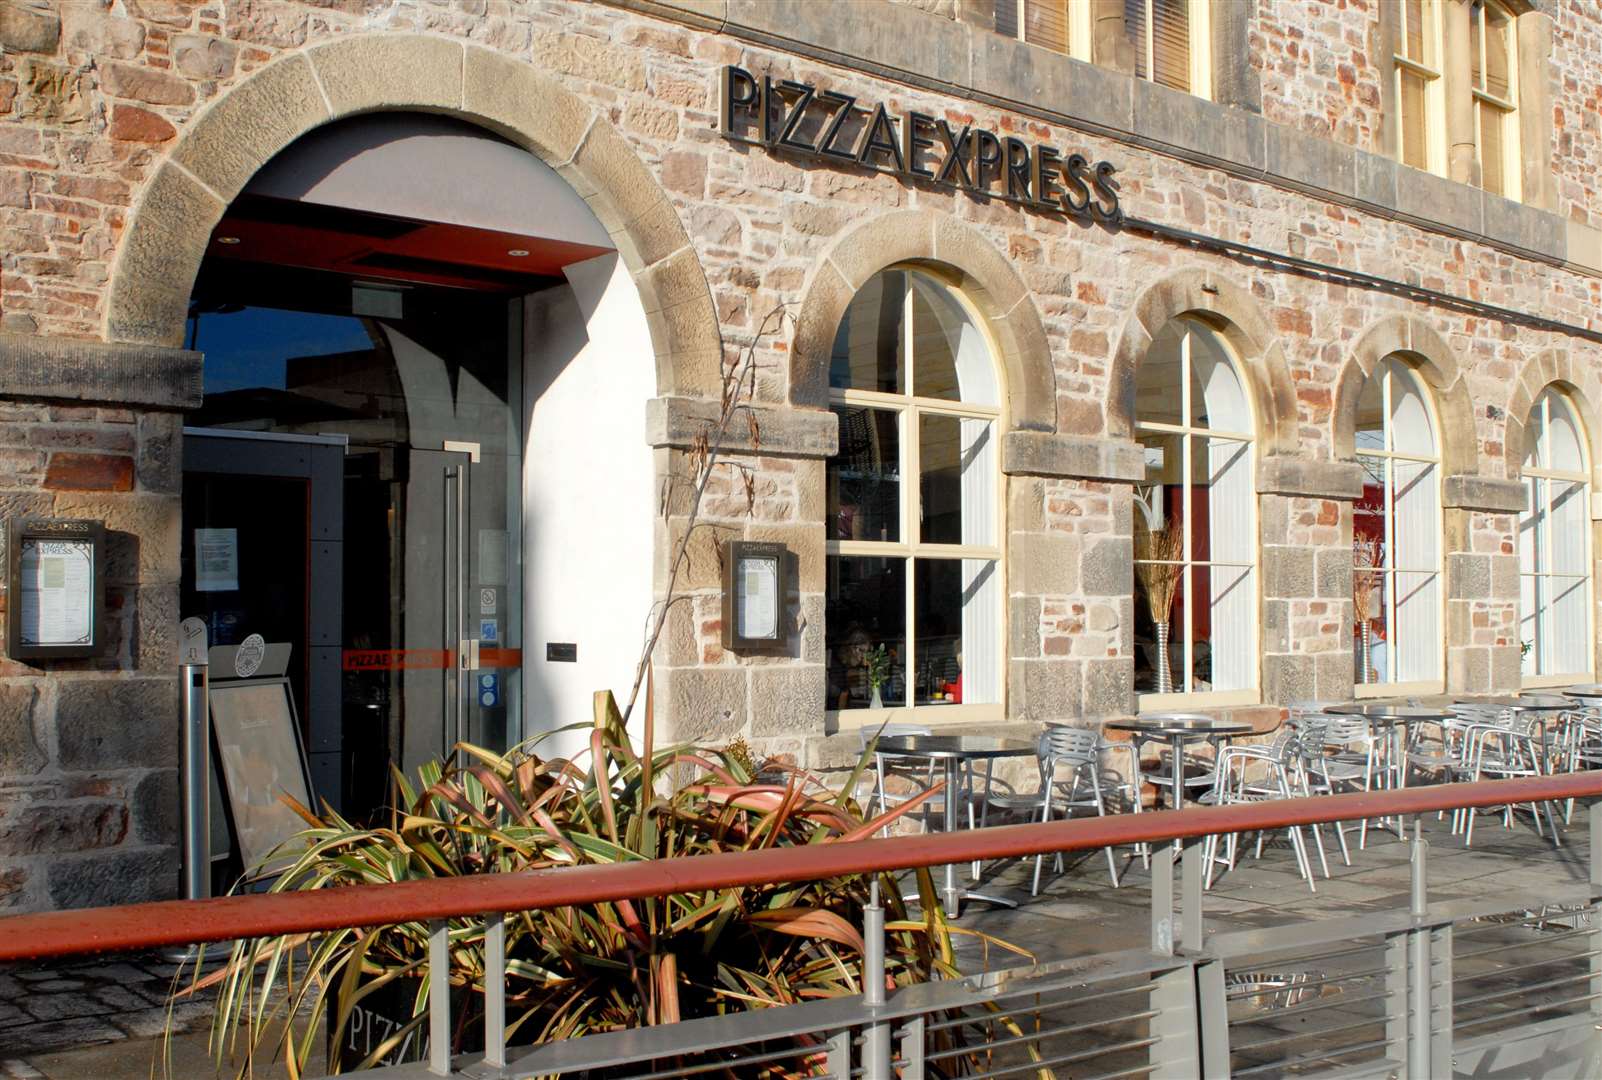 Pizza Express in Falcon Square, Inverness.